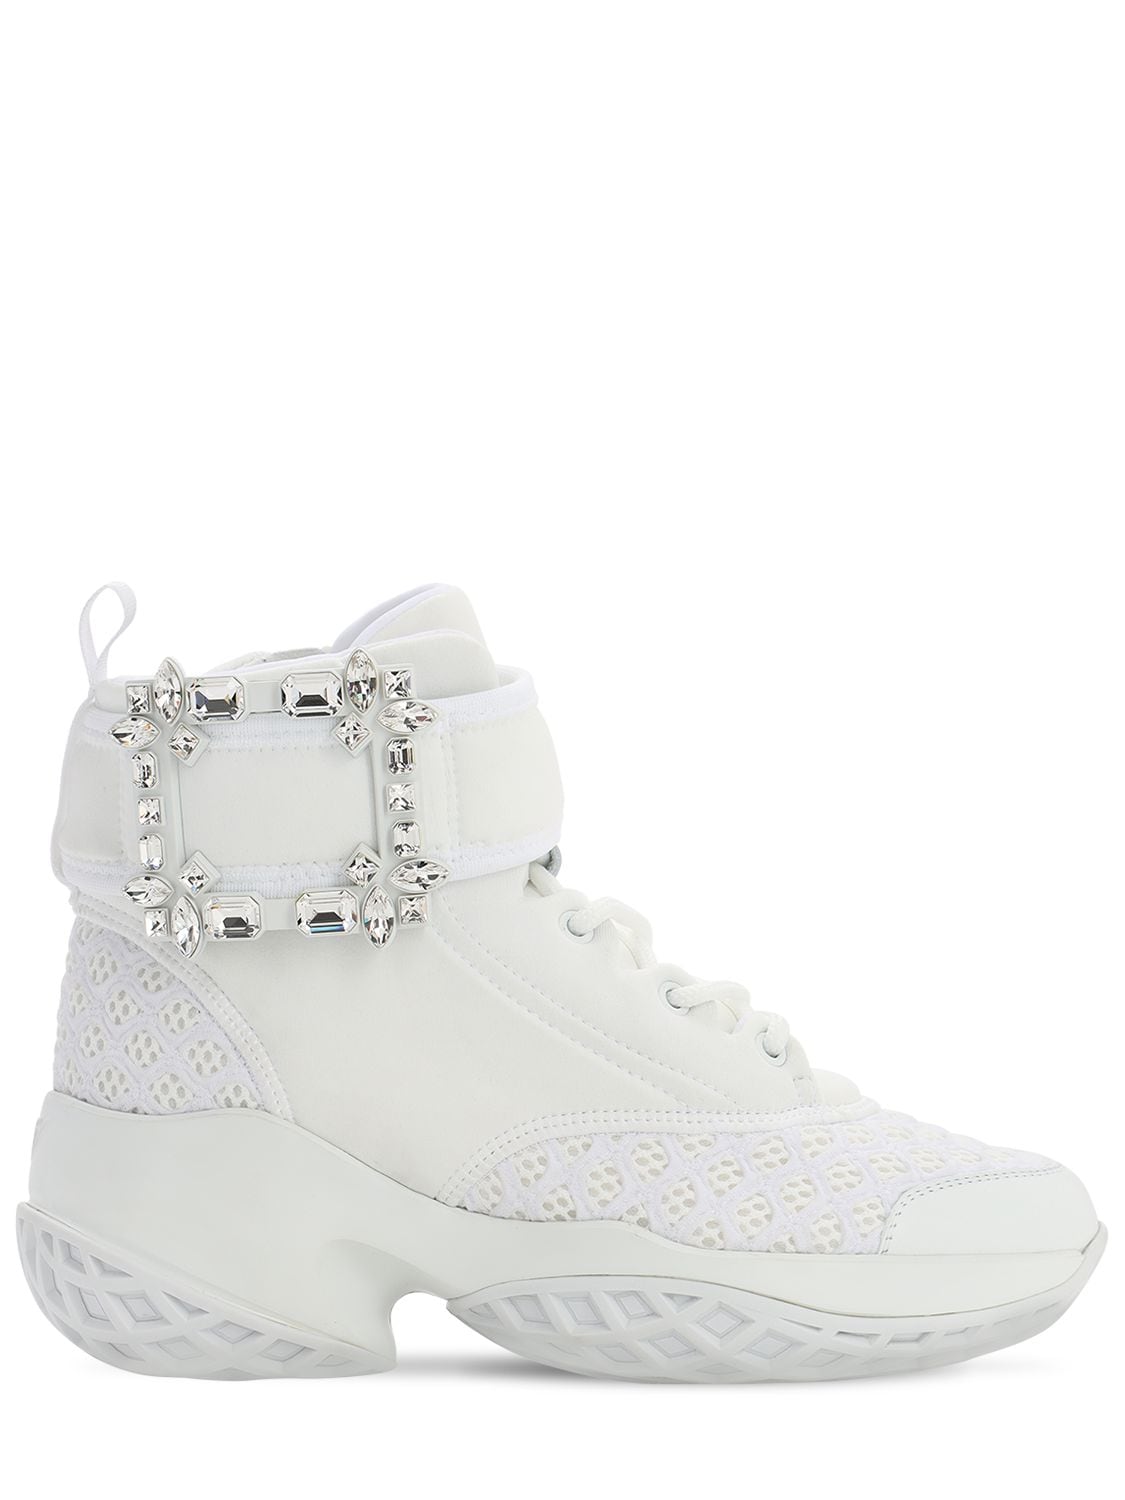 Roger Vivier 75mm Viv Run Neoprene Sneaker W/crystals In White | ModeSens